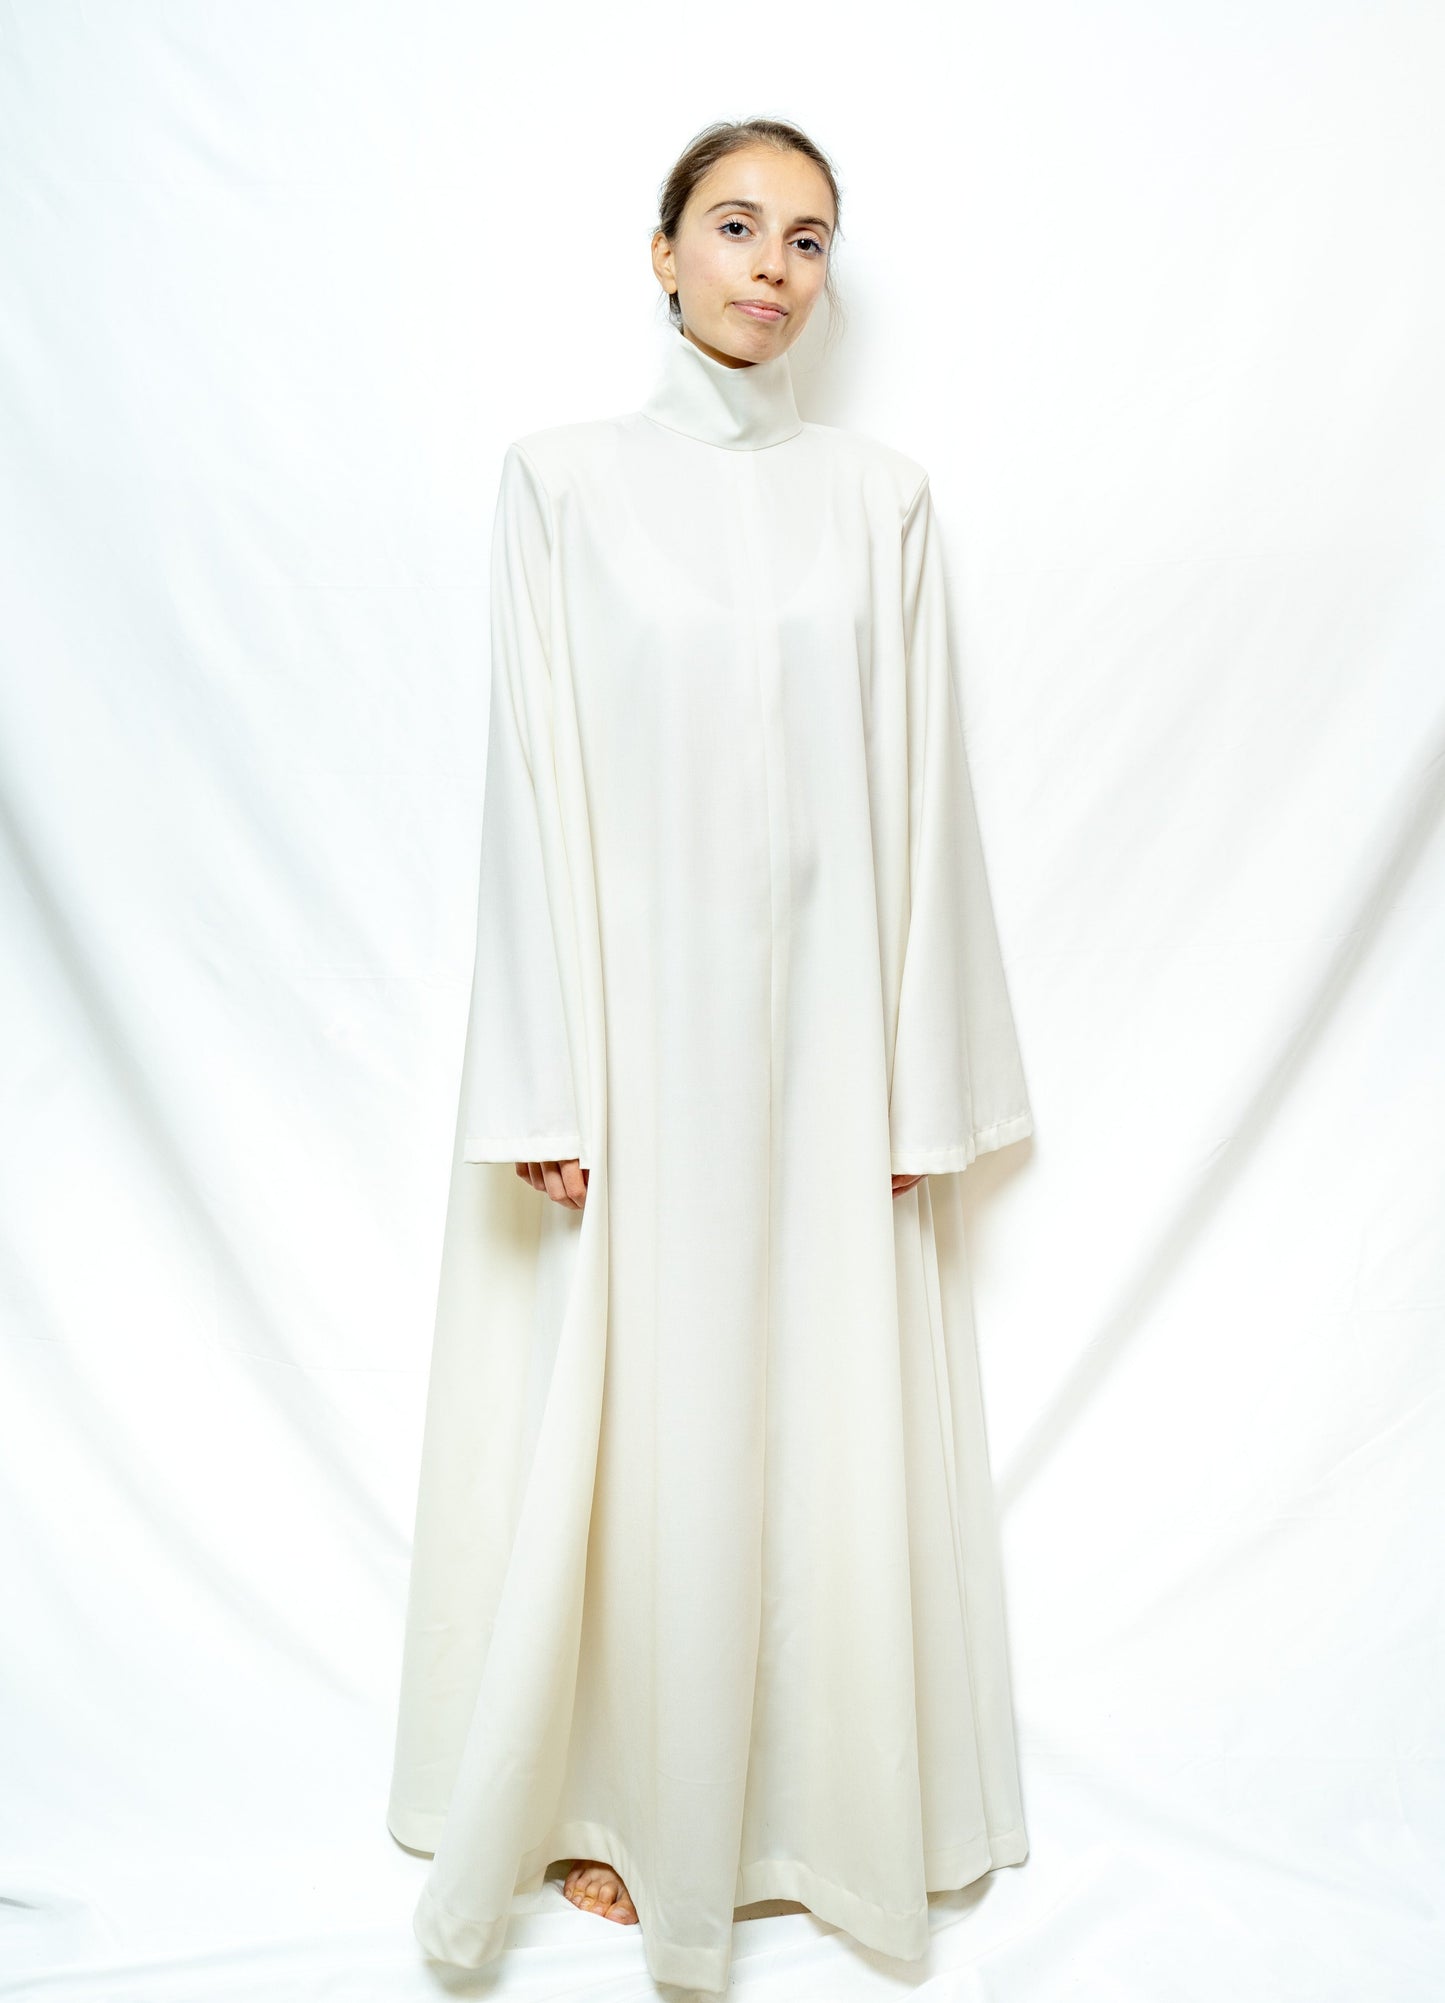 Purity Dress in Wool